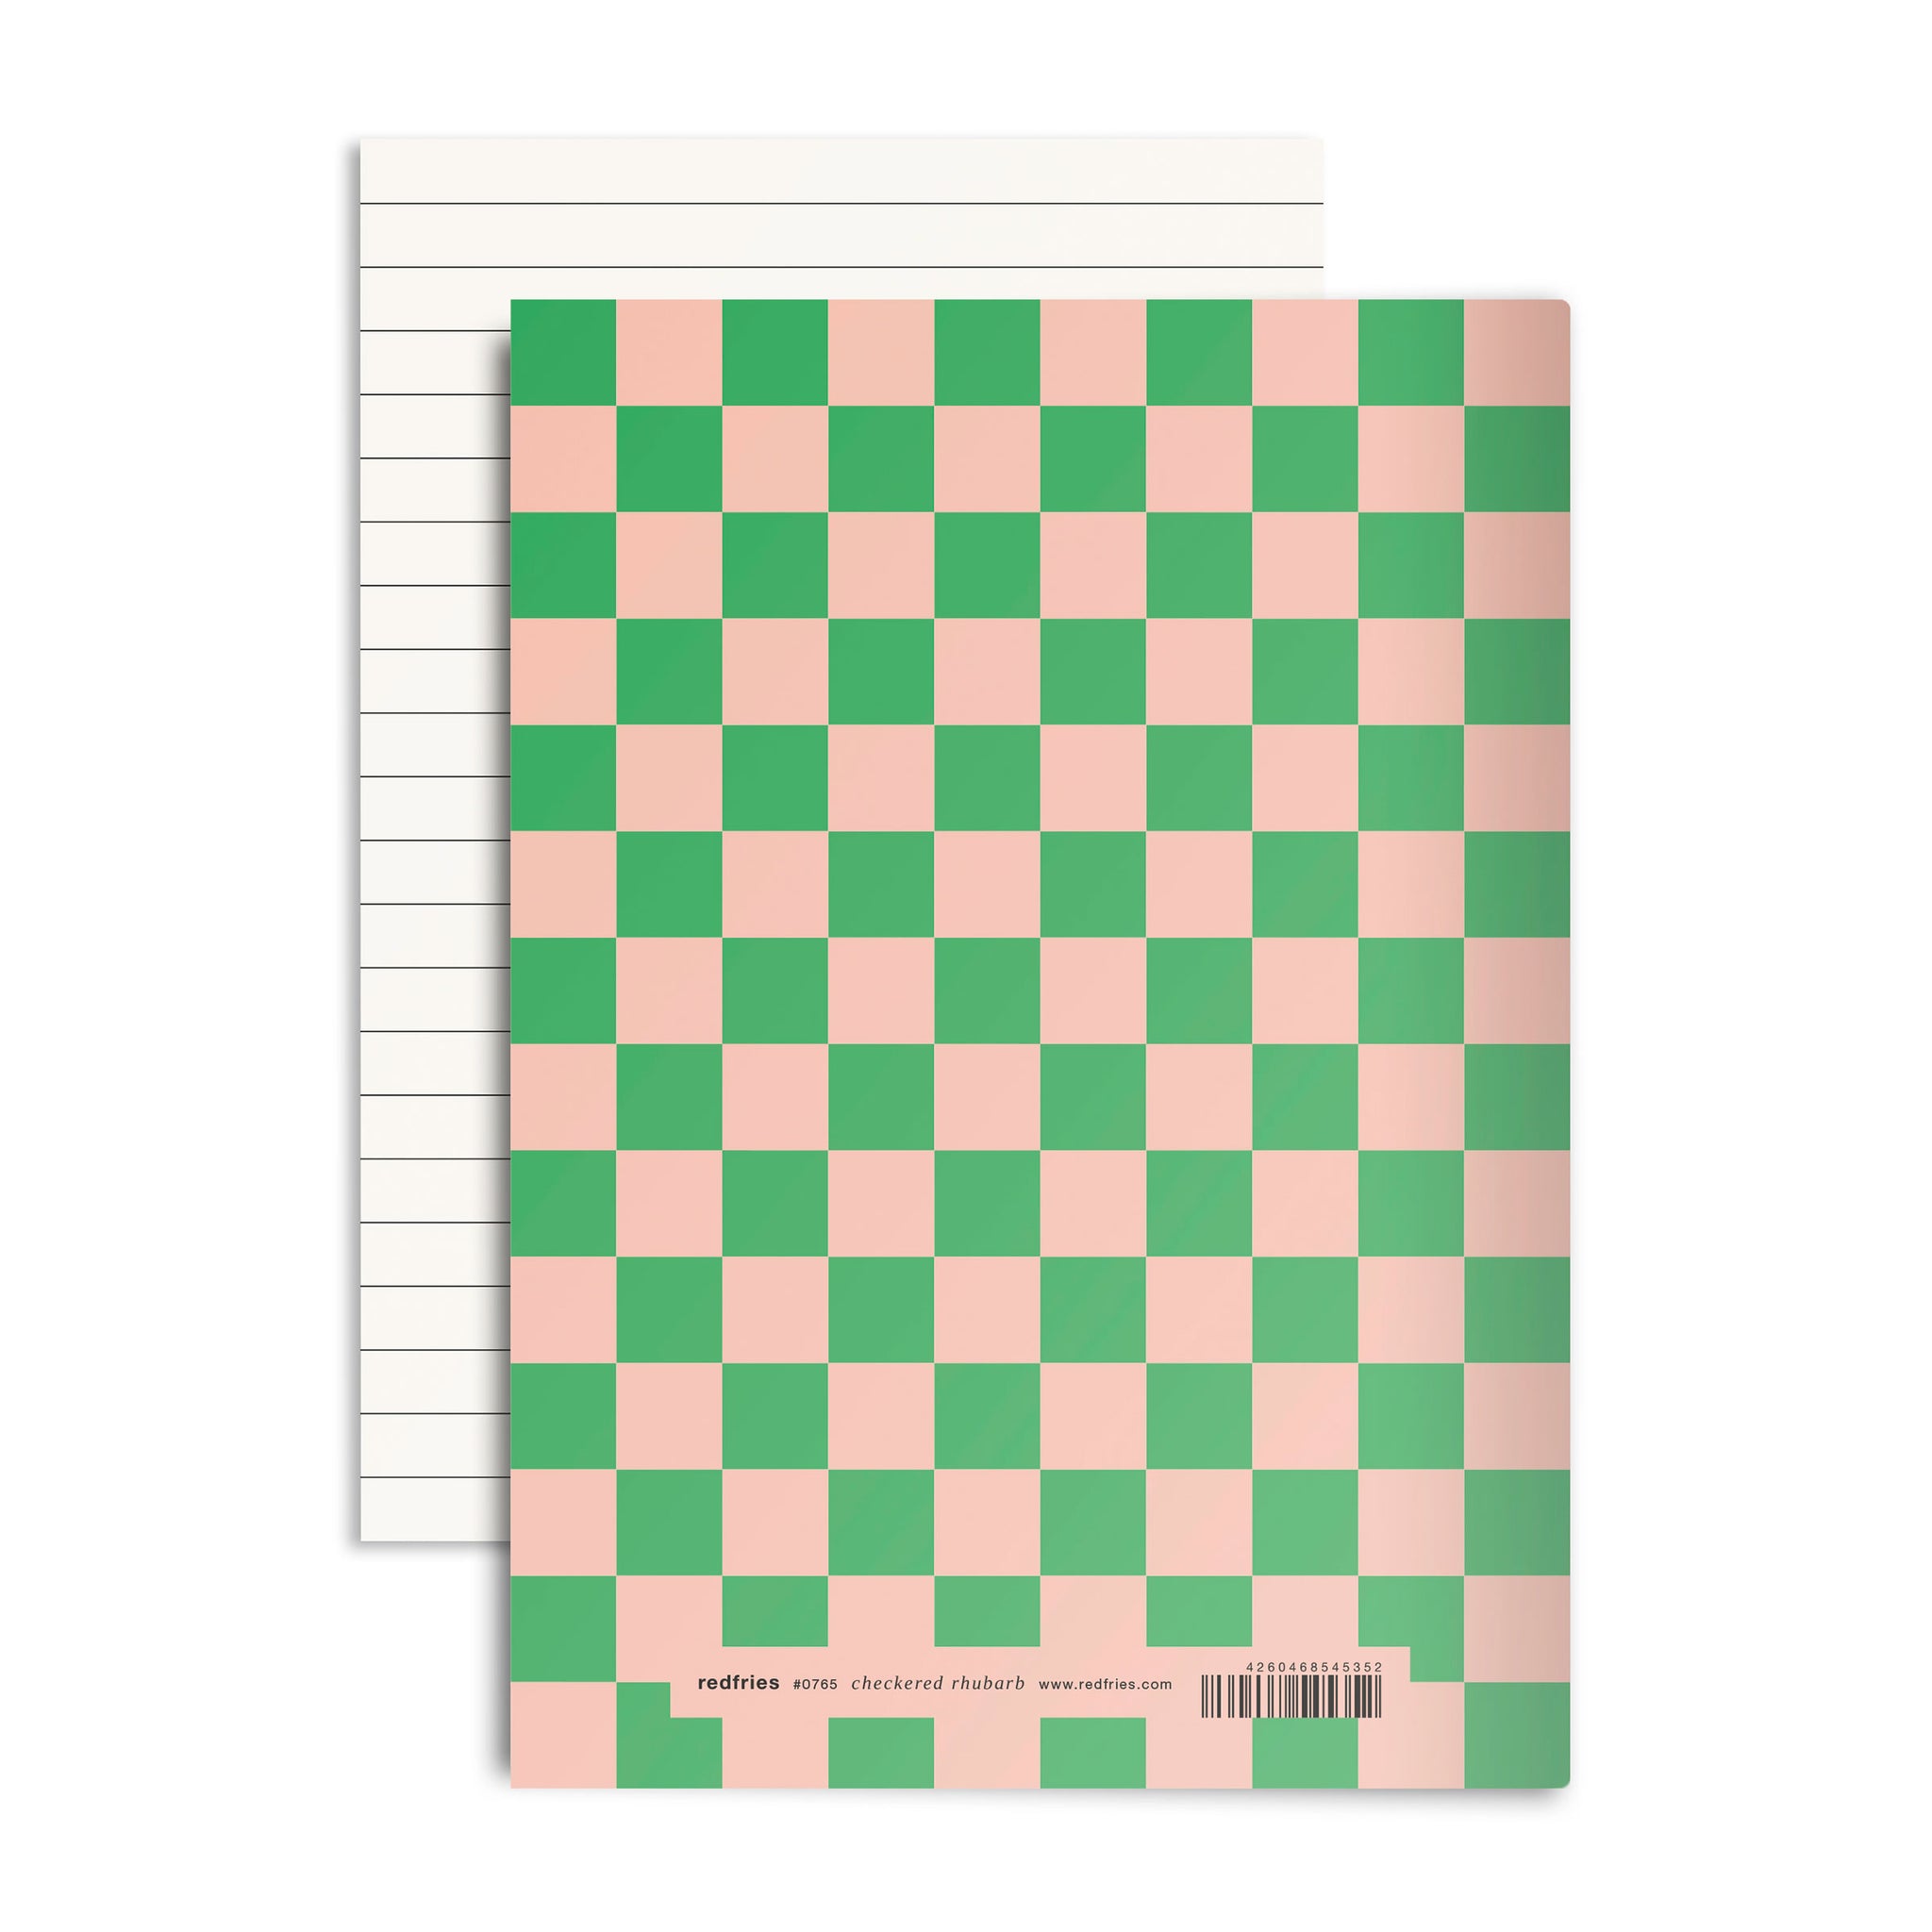 #0765 checkered rhubarb